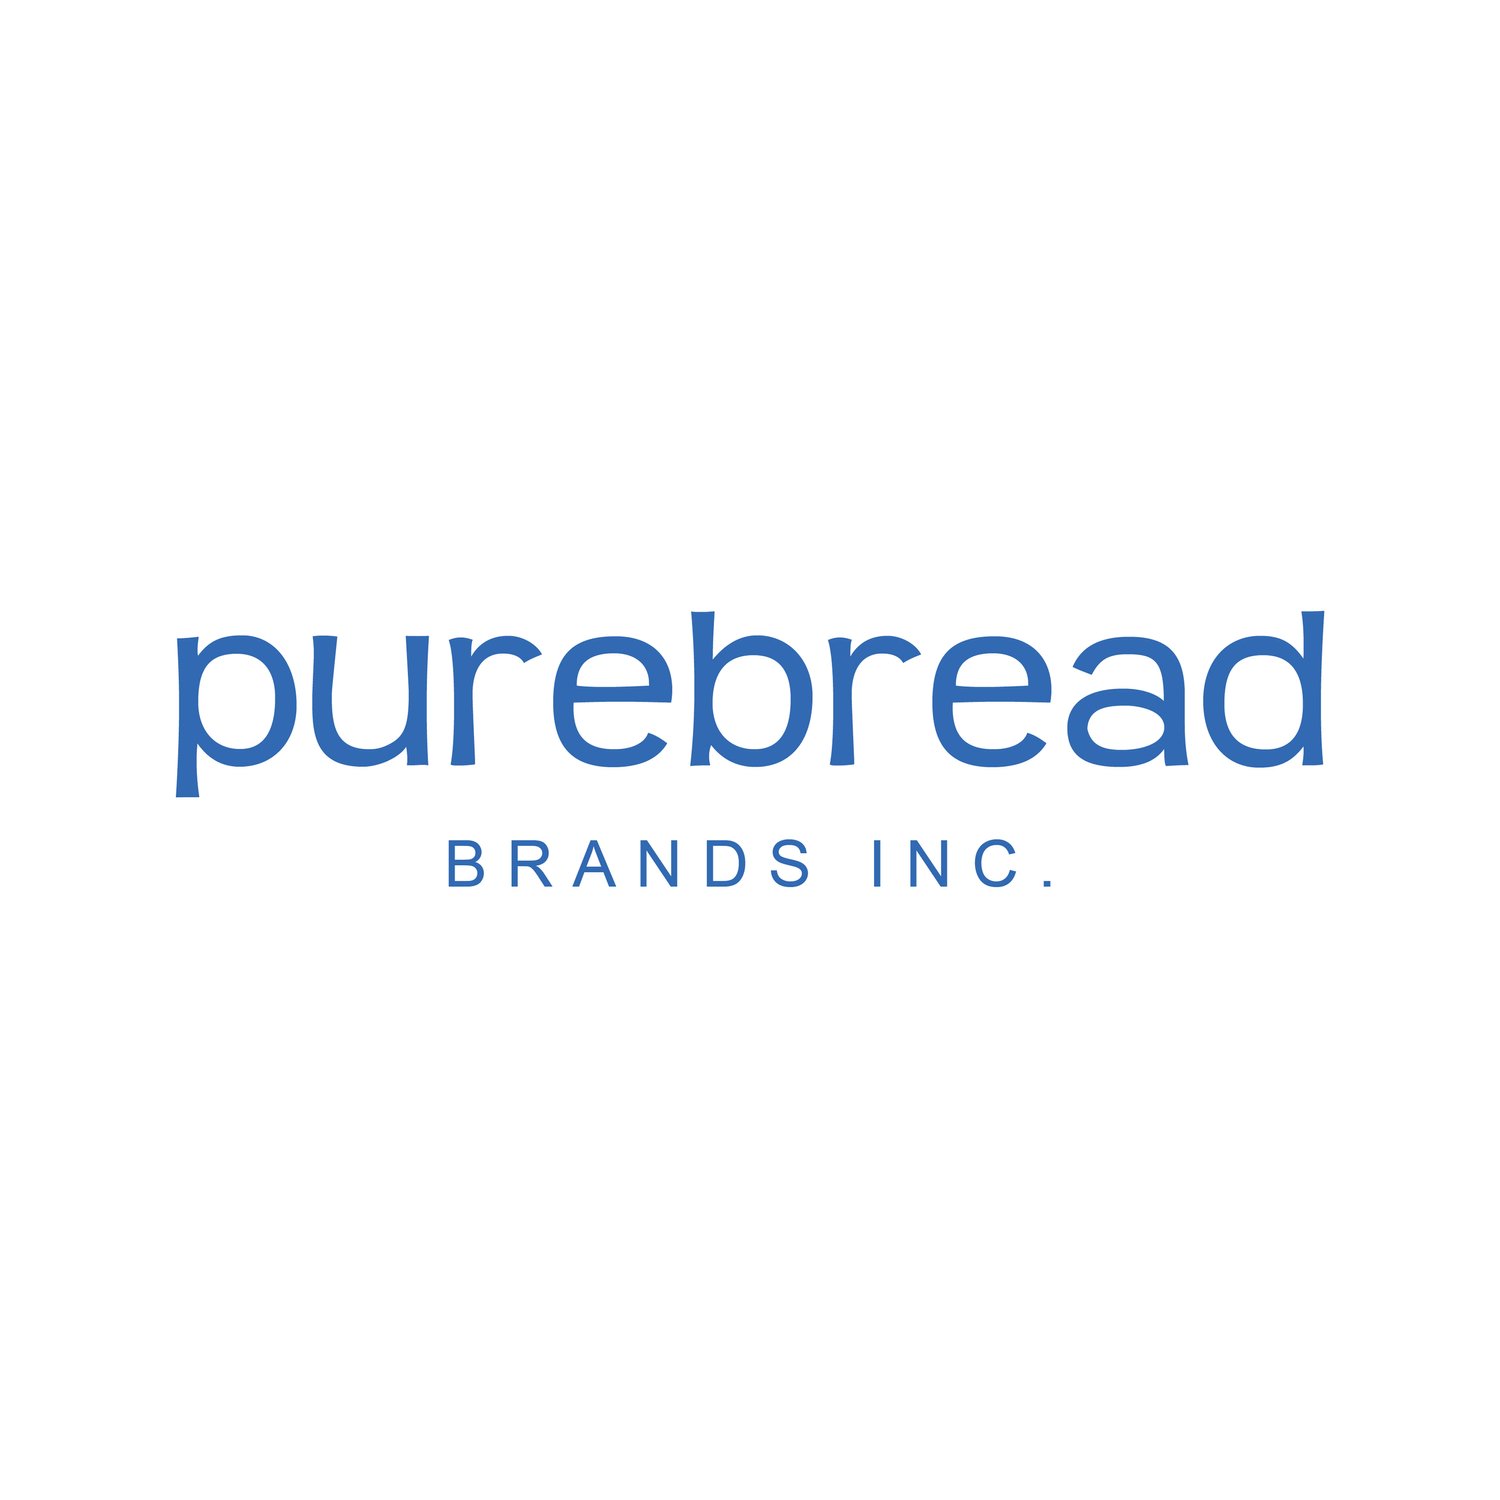 Purebread Brands